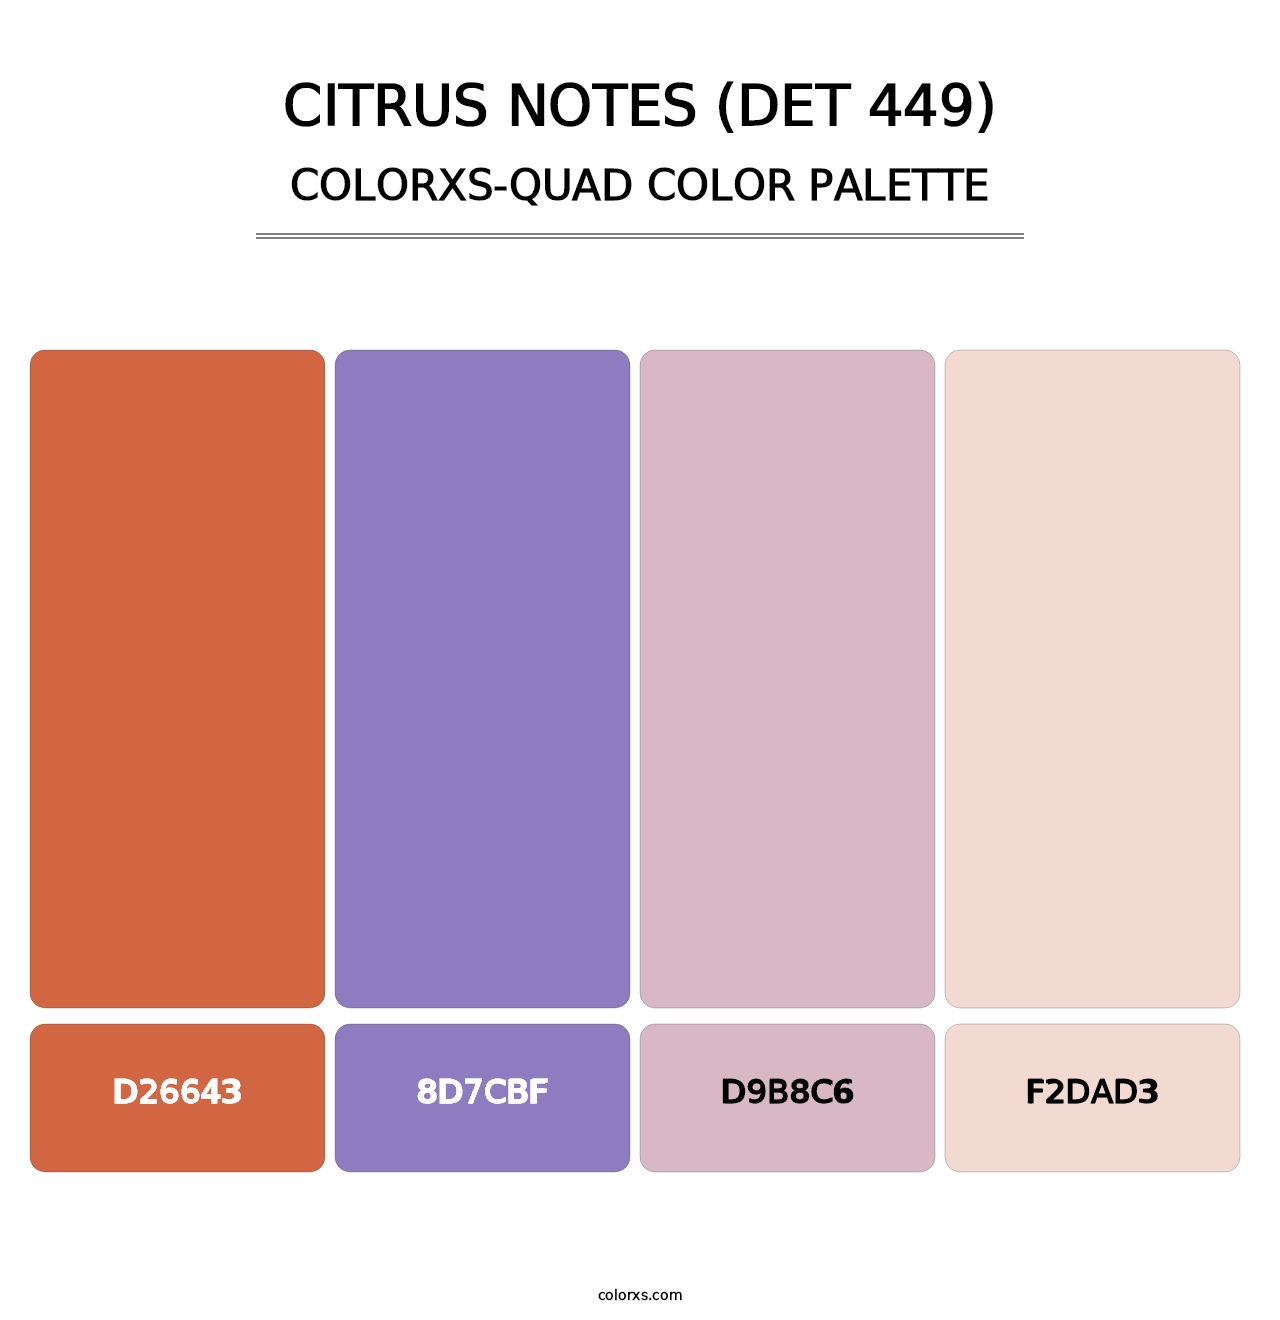 Citrus Notes (DET 449) - Colorxs Quad Palette